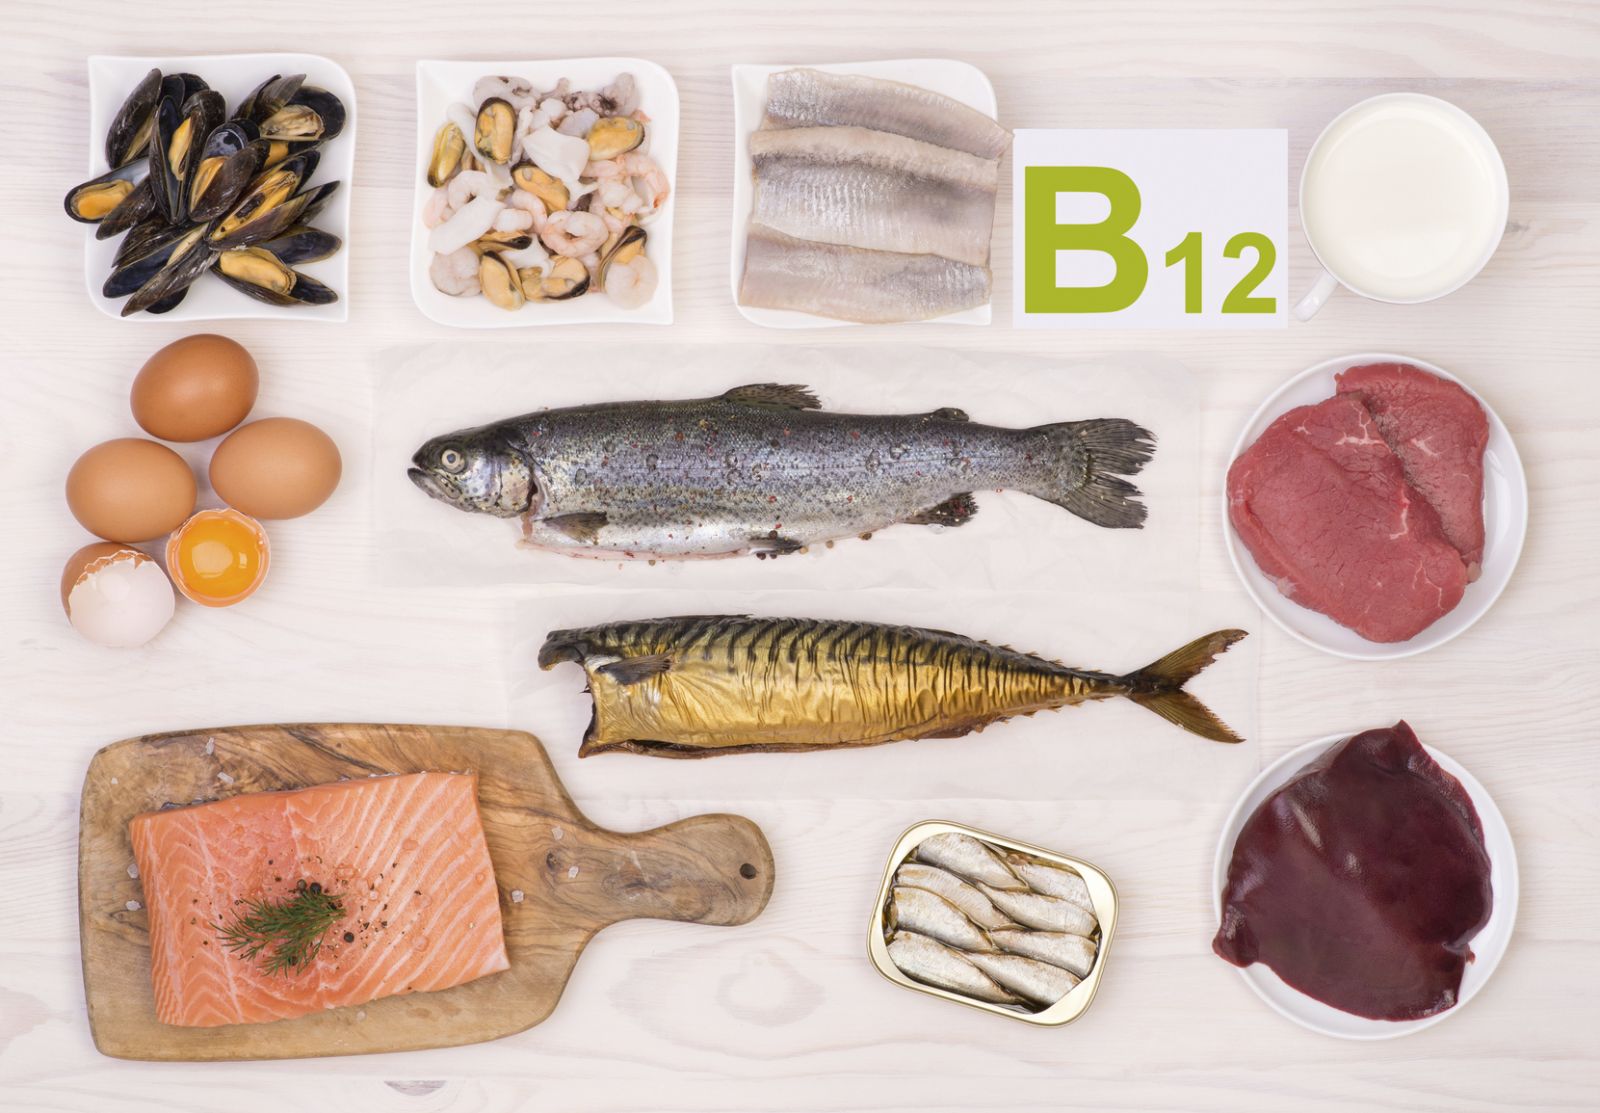   Tình trạng não cá vàng có thể xảy ra khi chế độ ăn thiếu vitamin B12  